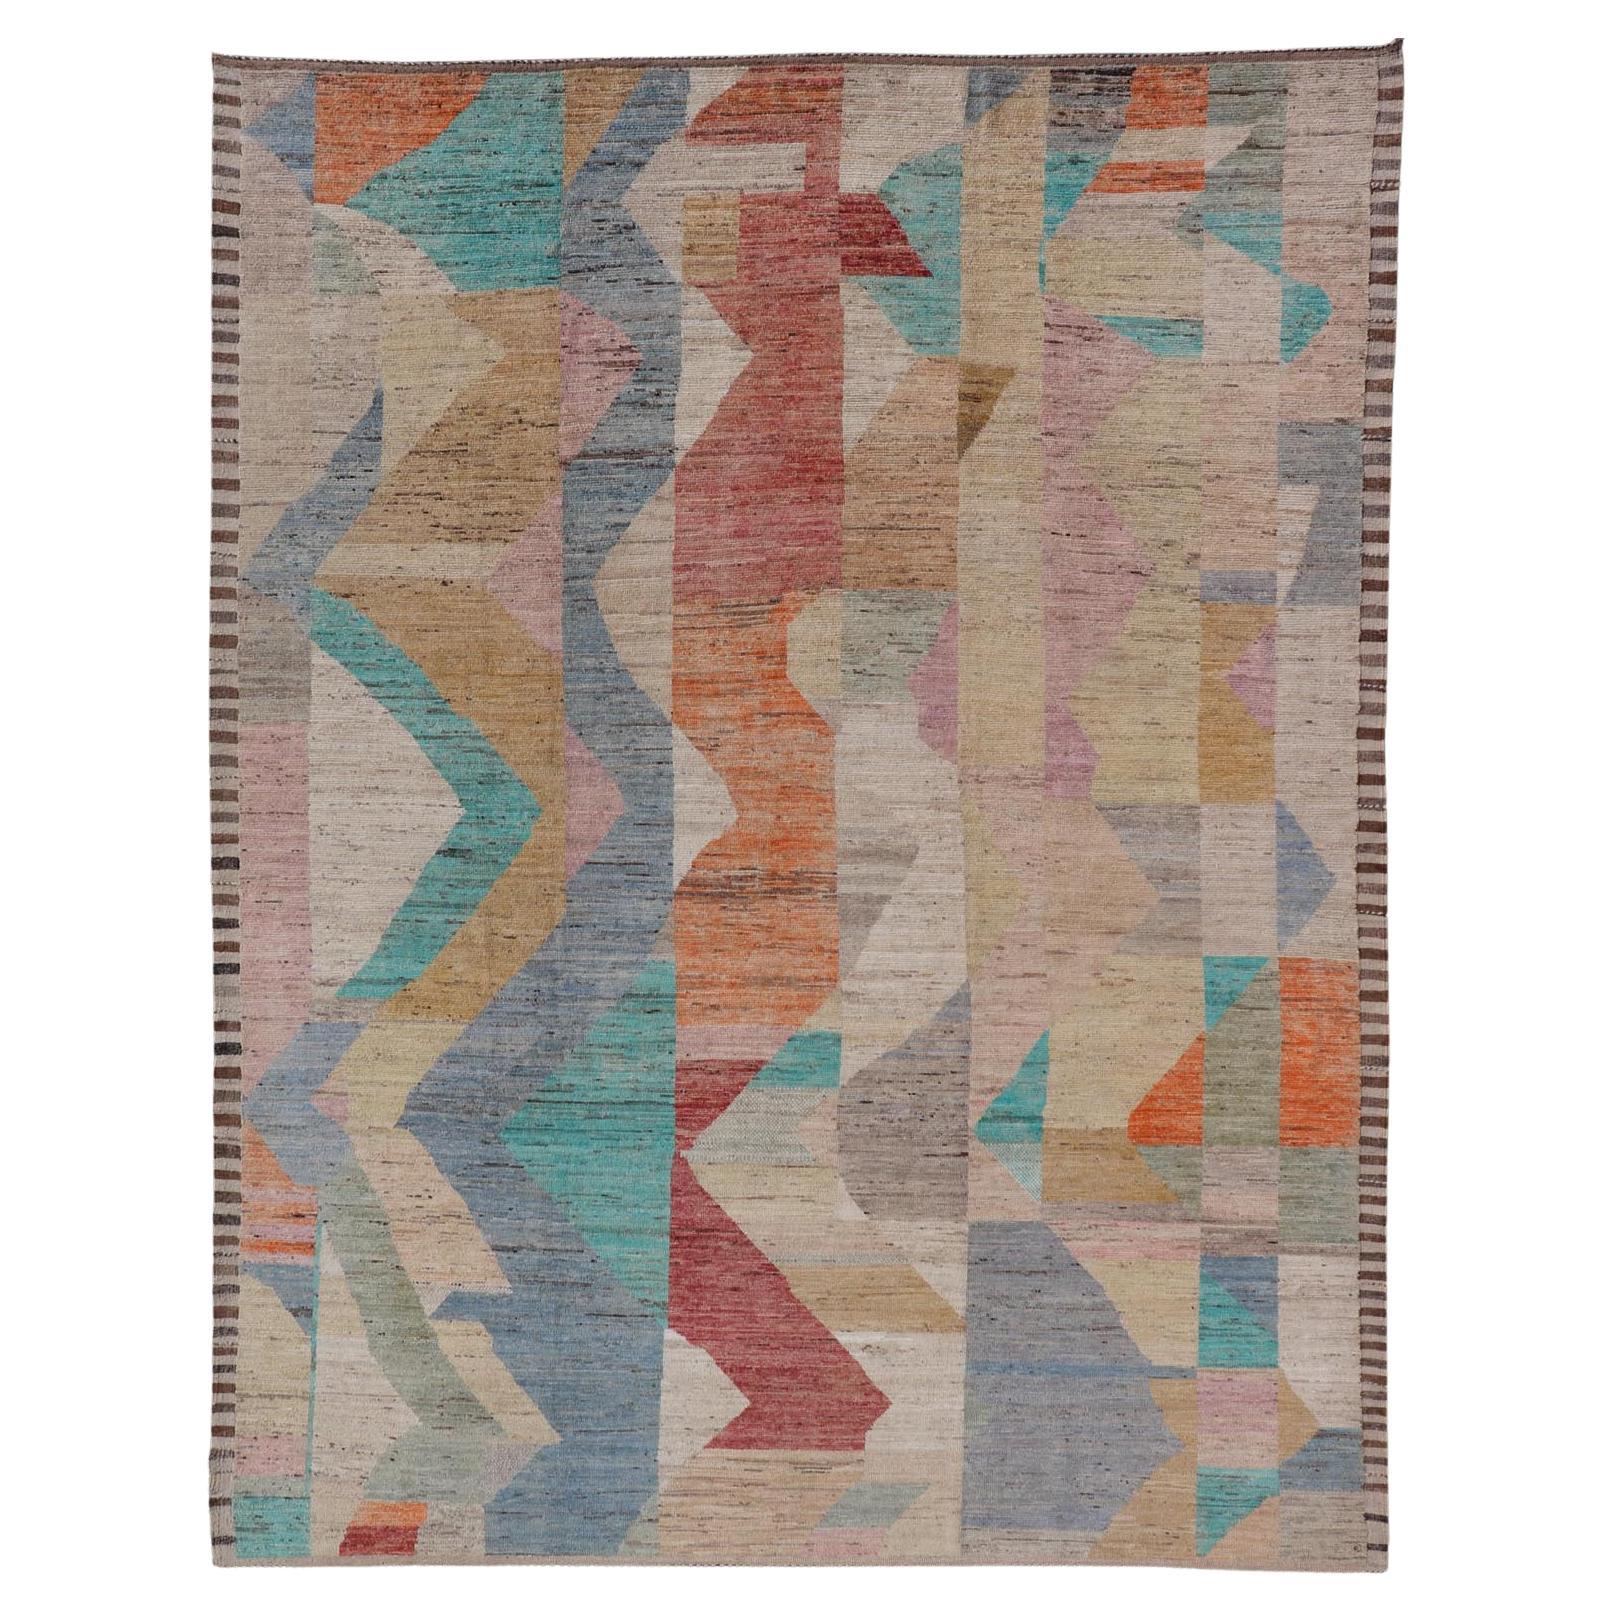 Moderner handgeknüpfter Teppich aus Wolle mit abstraktem, subgeometrischem Design in mehrfarbigen Farben